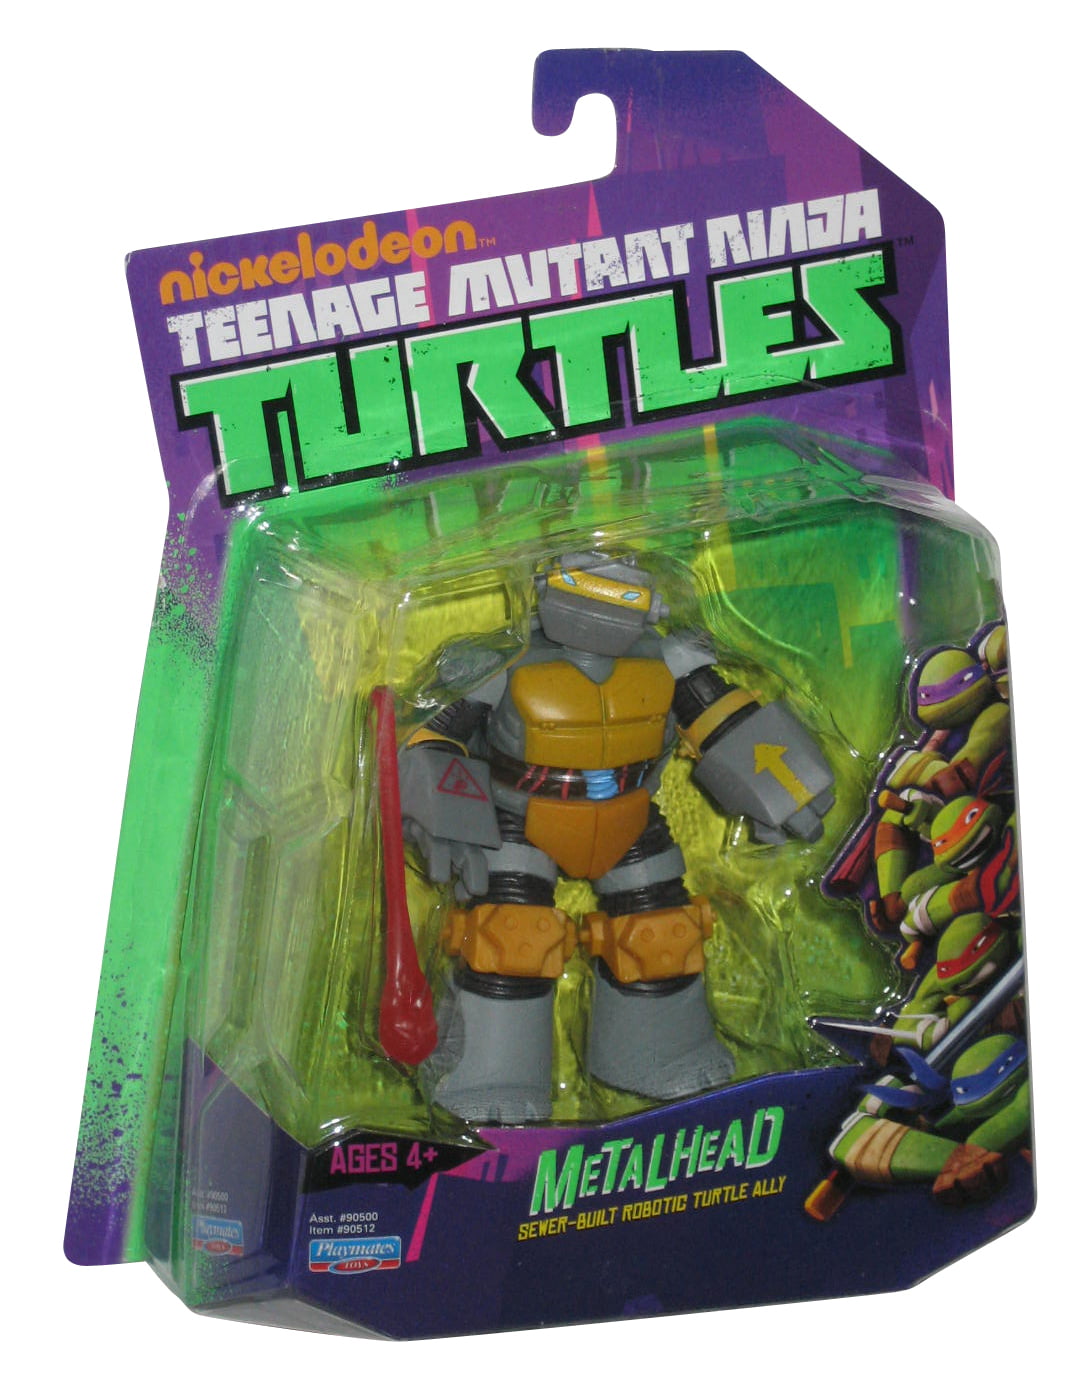 5'' TMNT METALHEAD Teenage Mutant Ninja Turtles Action Figure Playmates Toy 